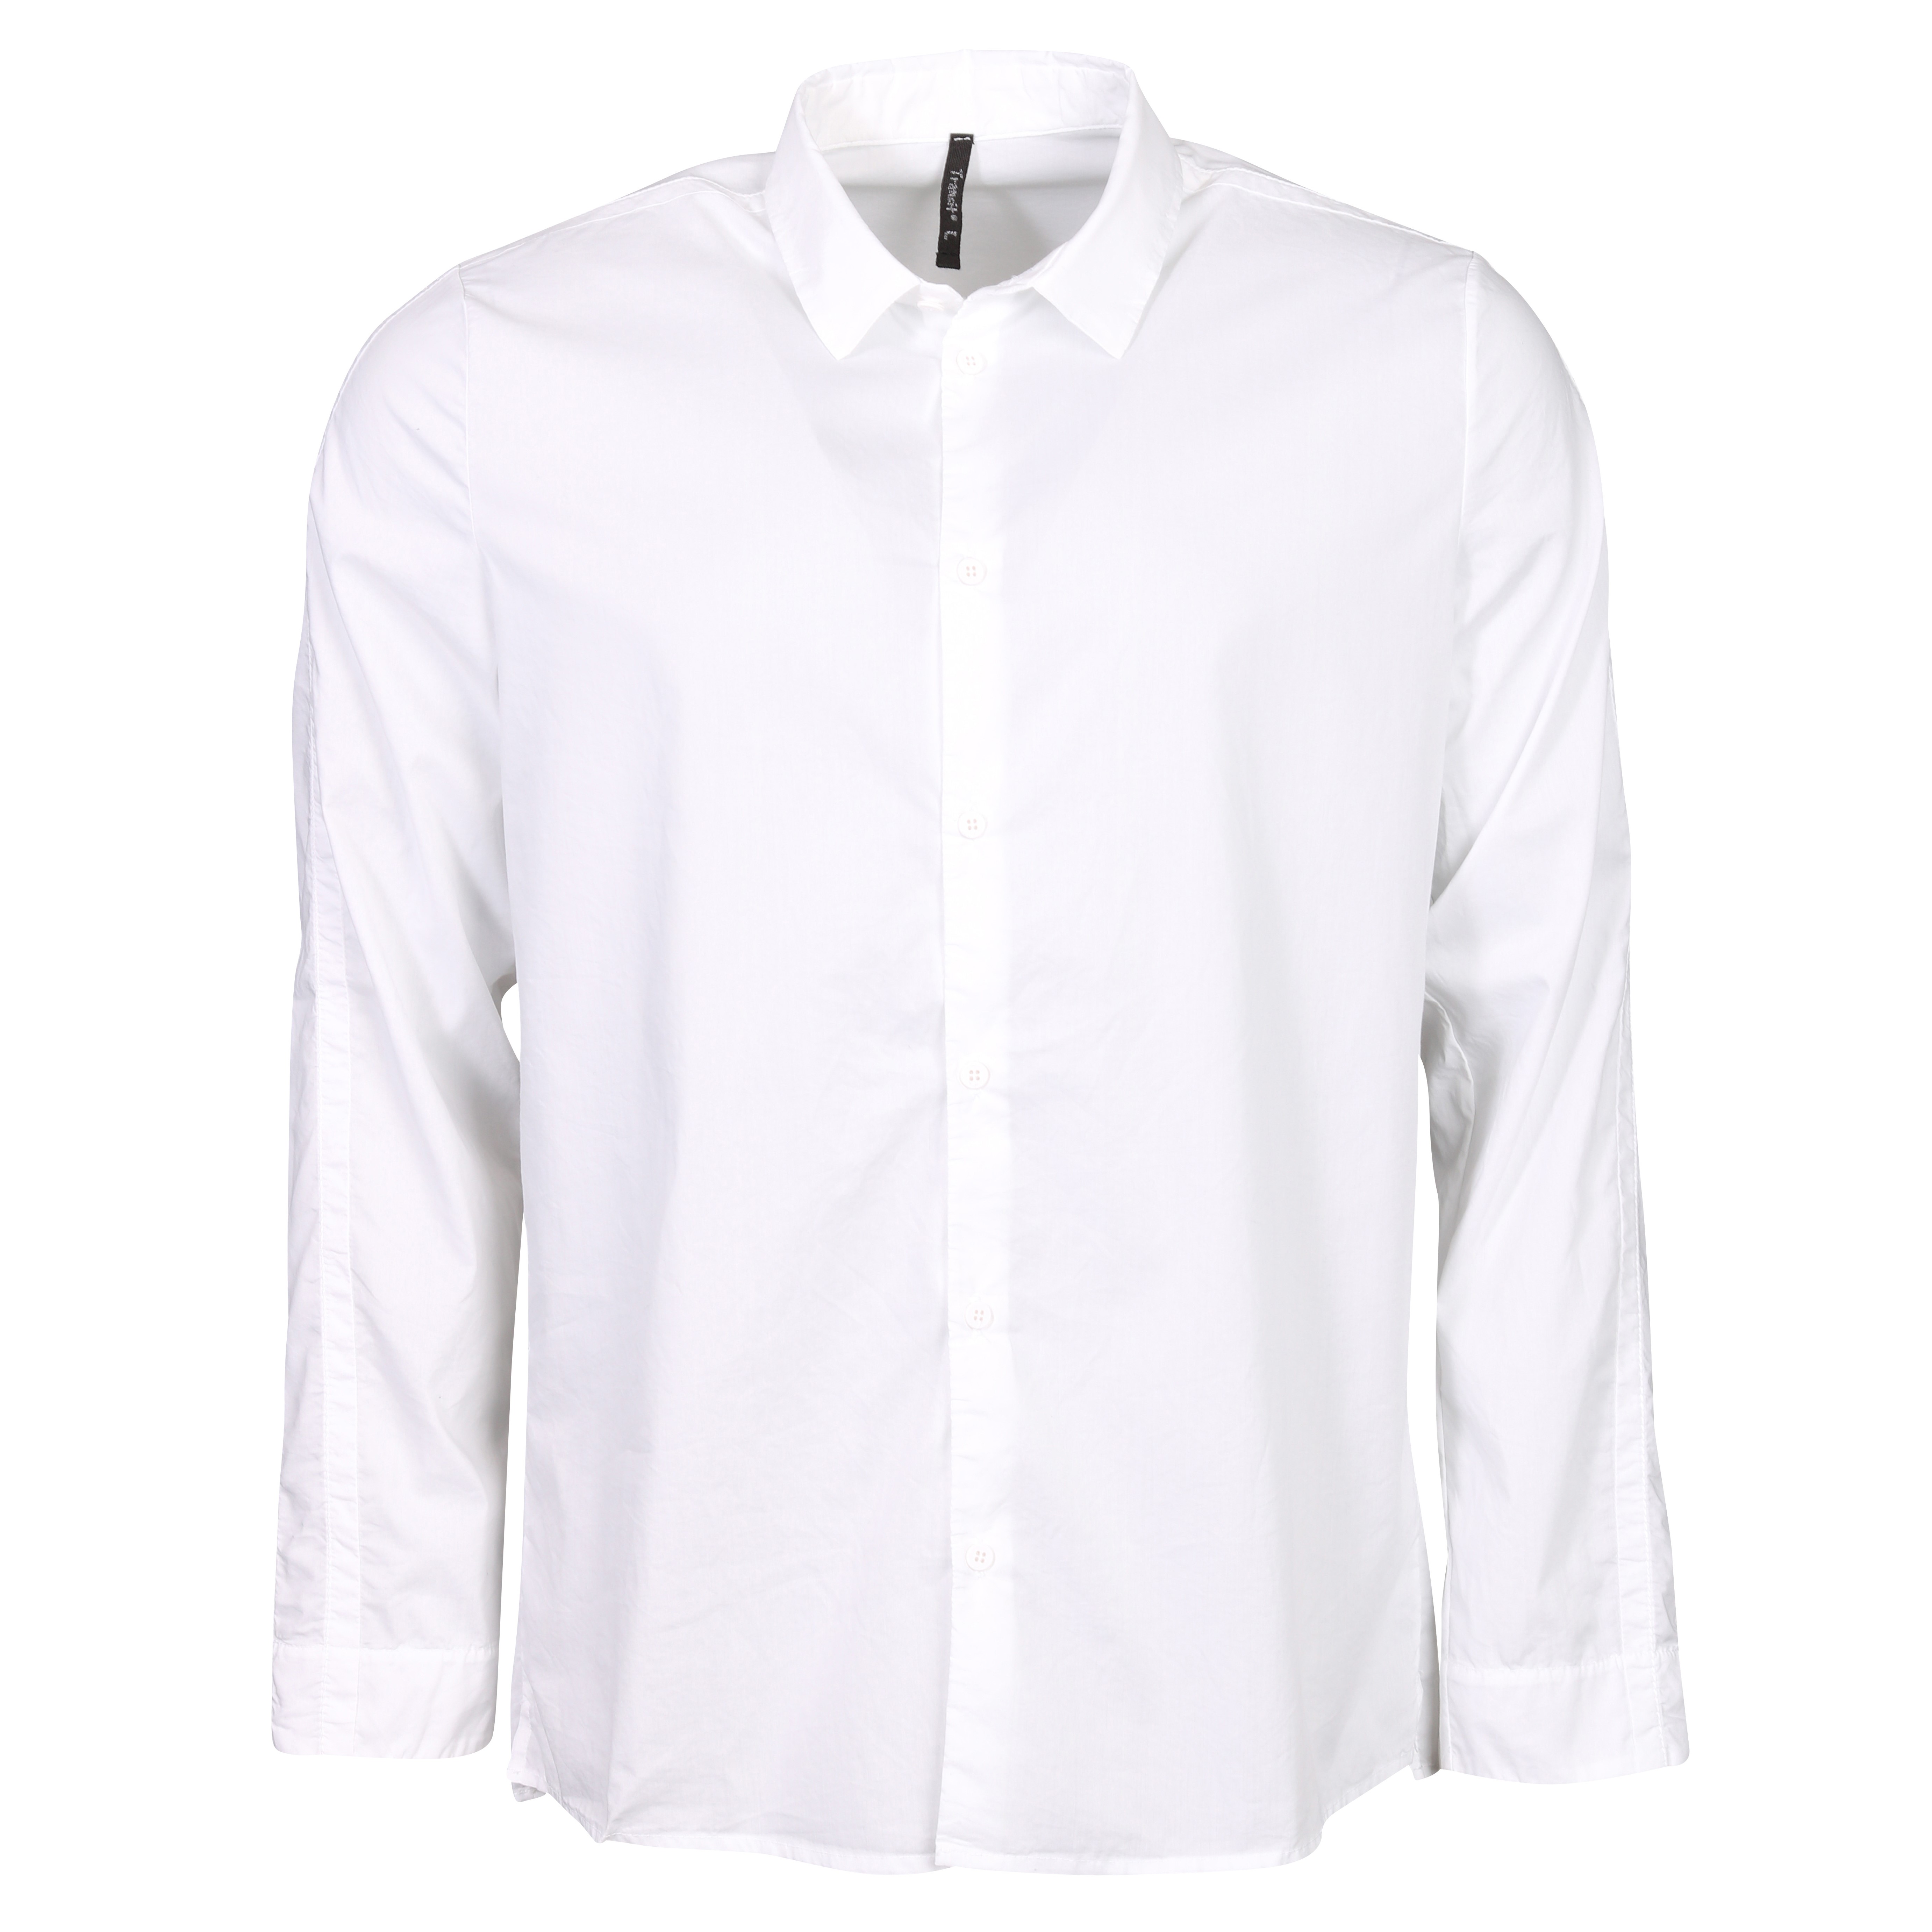 Transit Uomo Cotton Shirt in White L